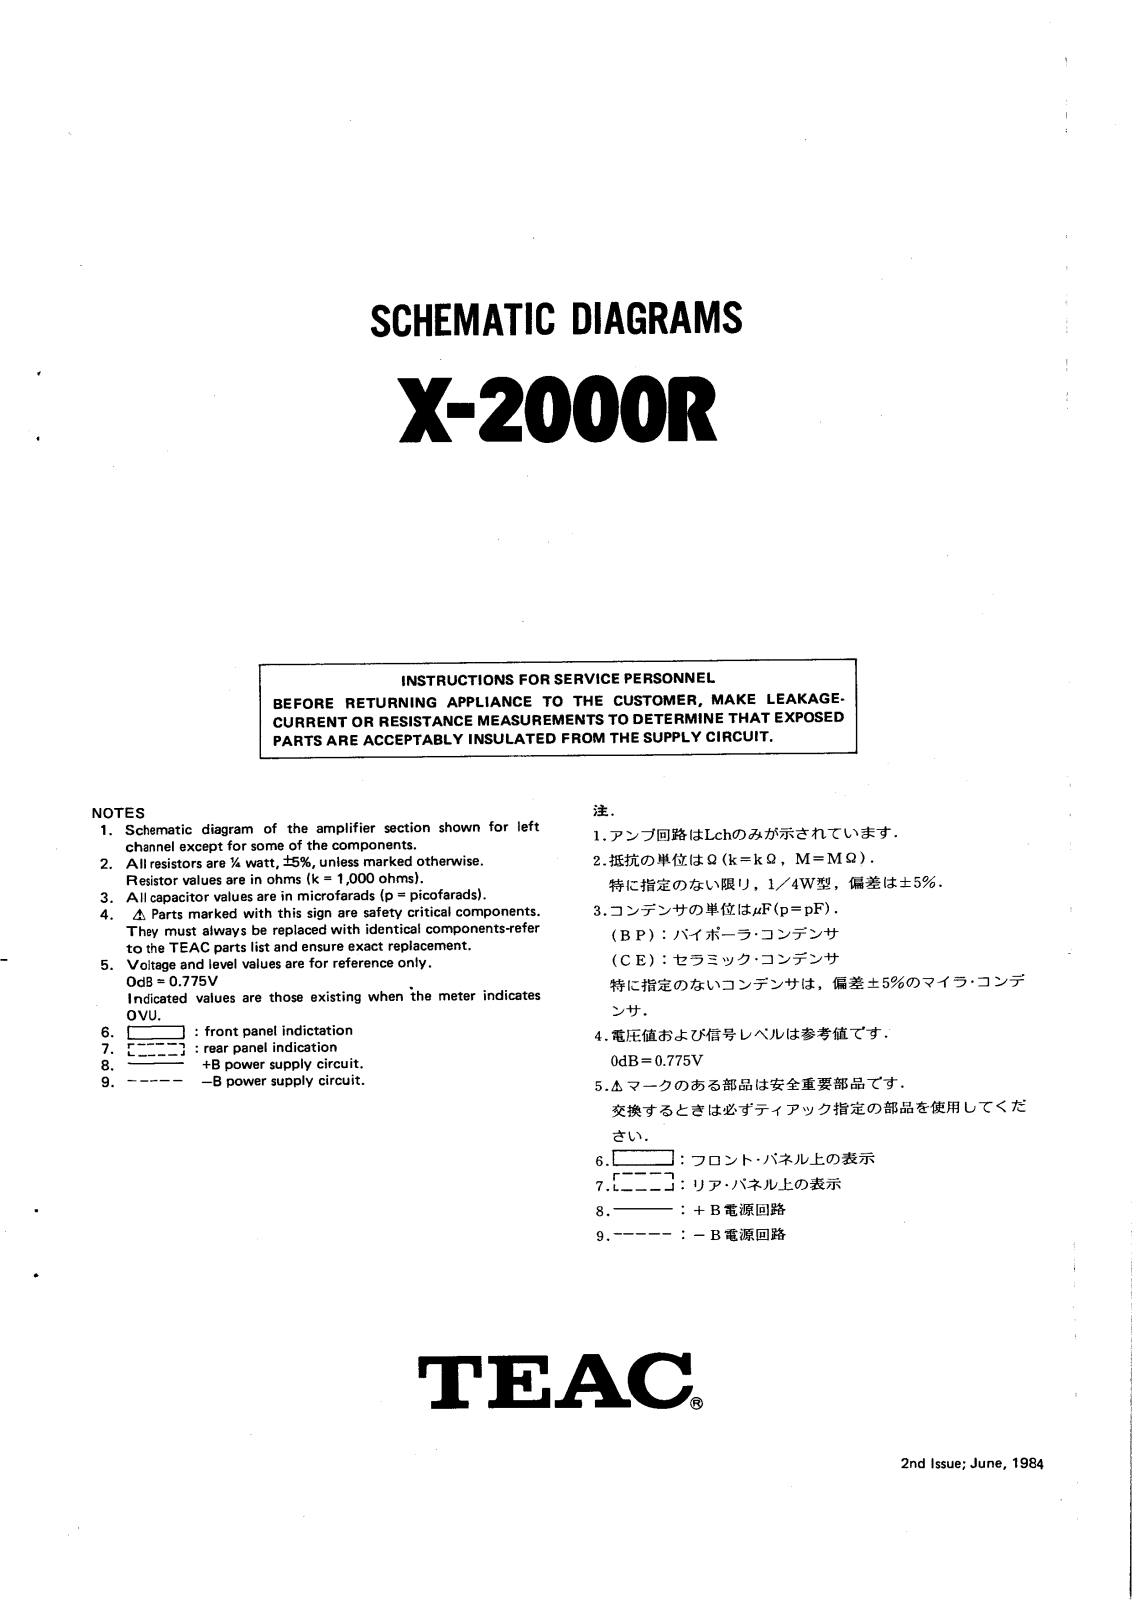 TEAC X-2000-R Schematic